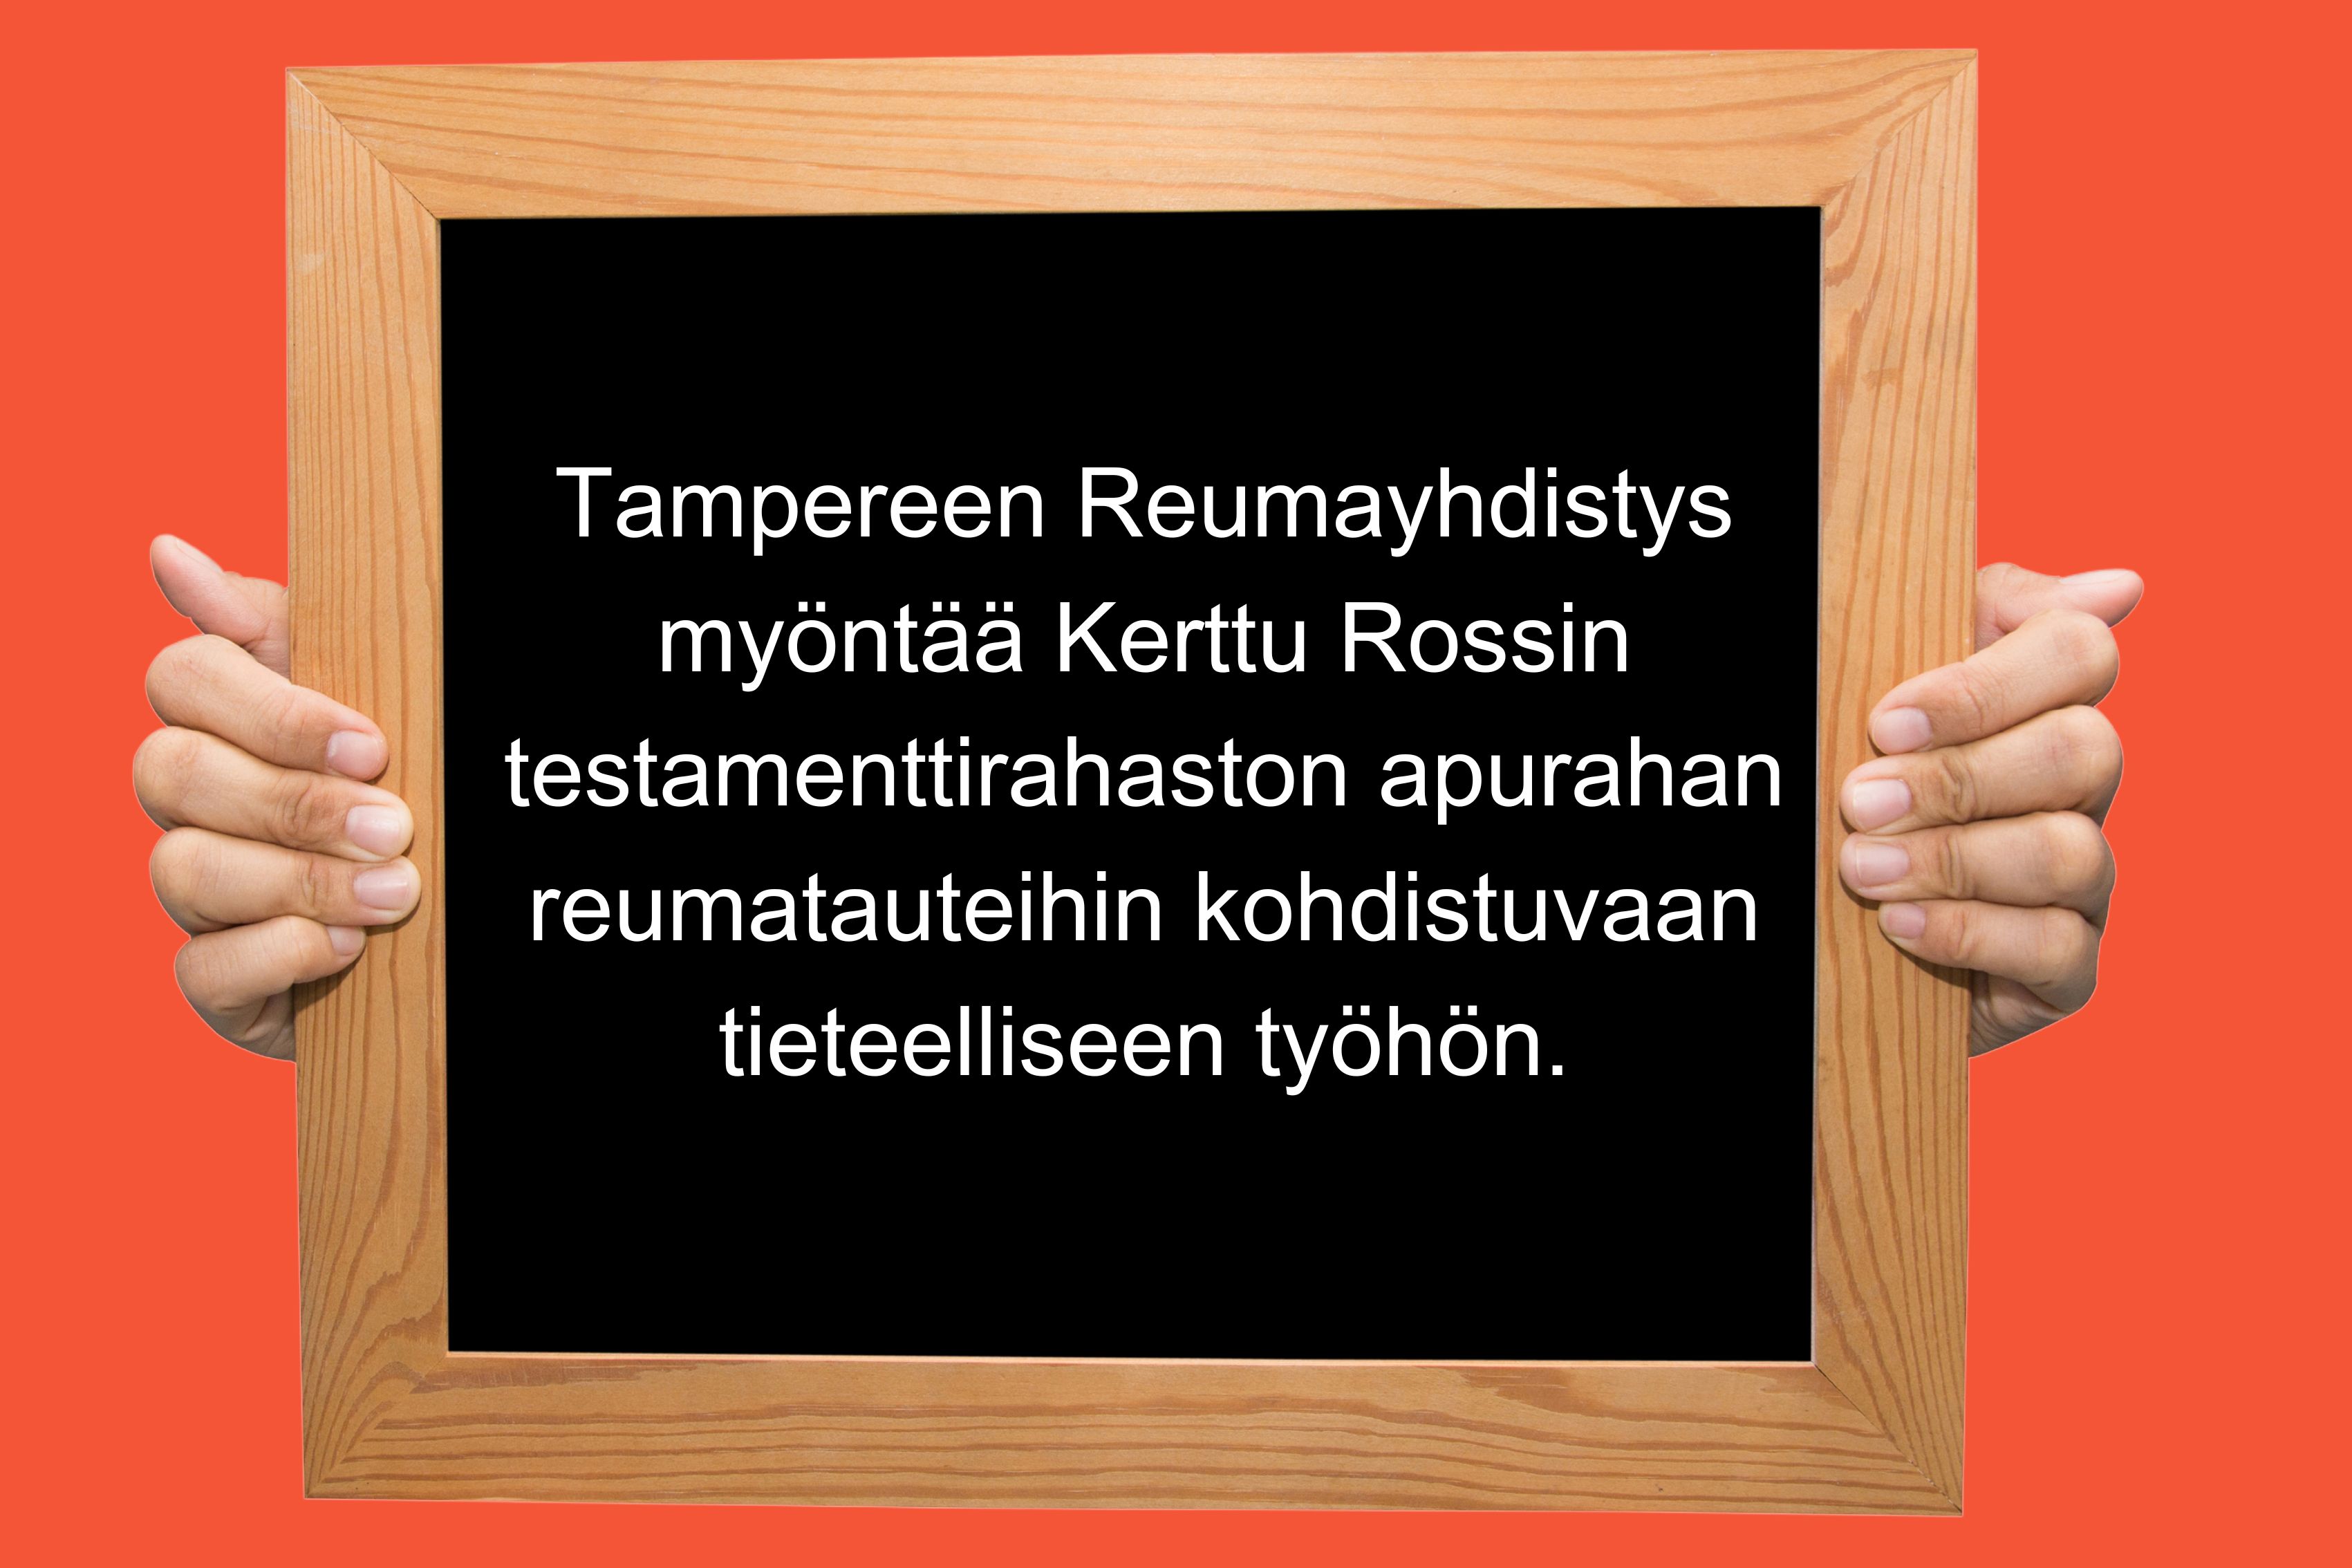 Tampereen Reumayhdistys ry:n apuraha 